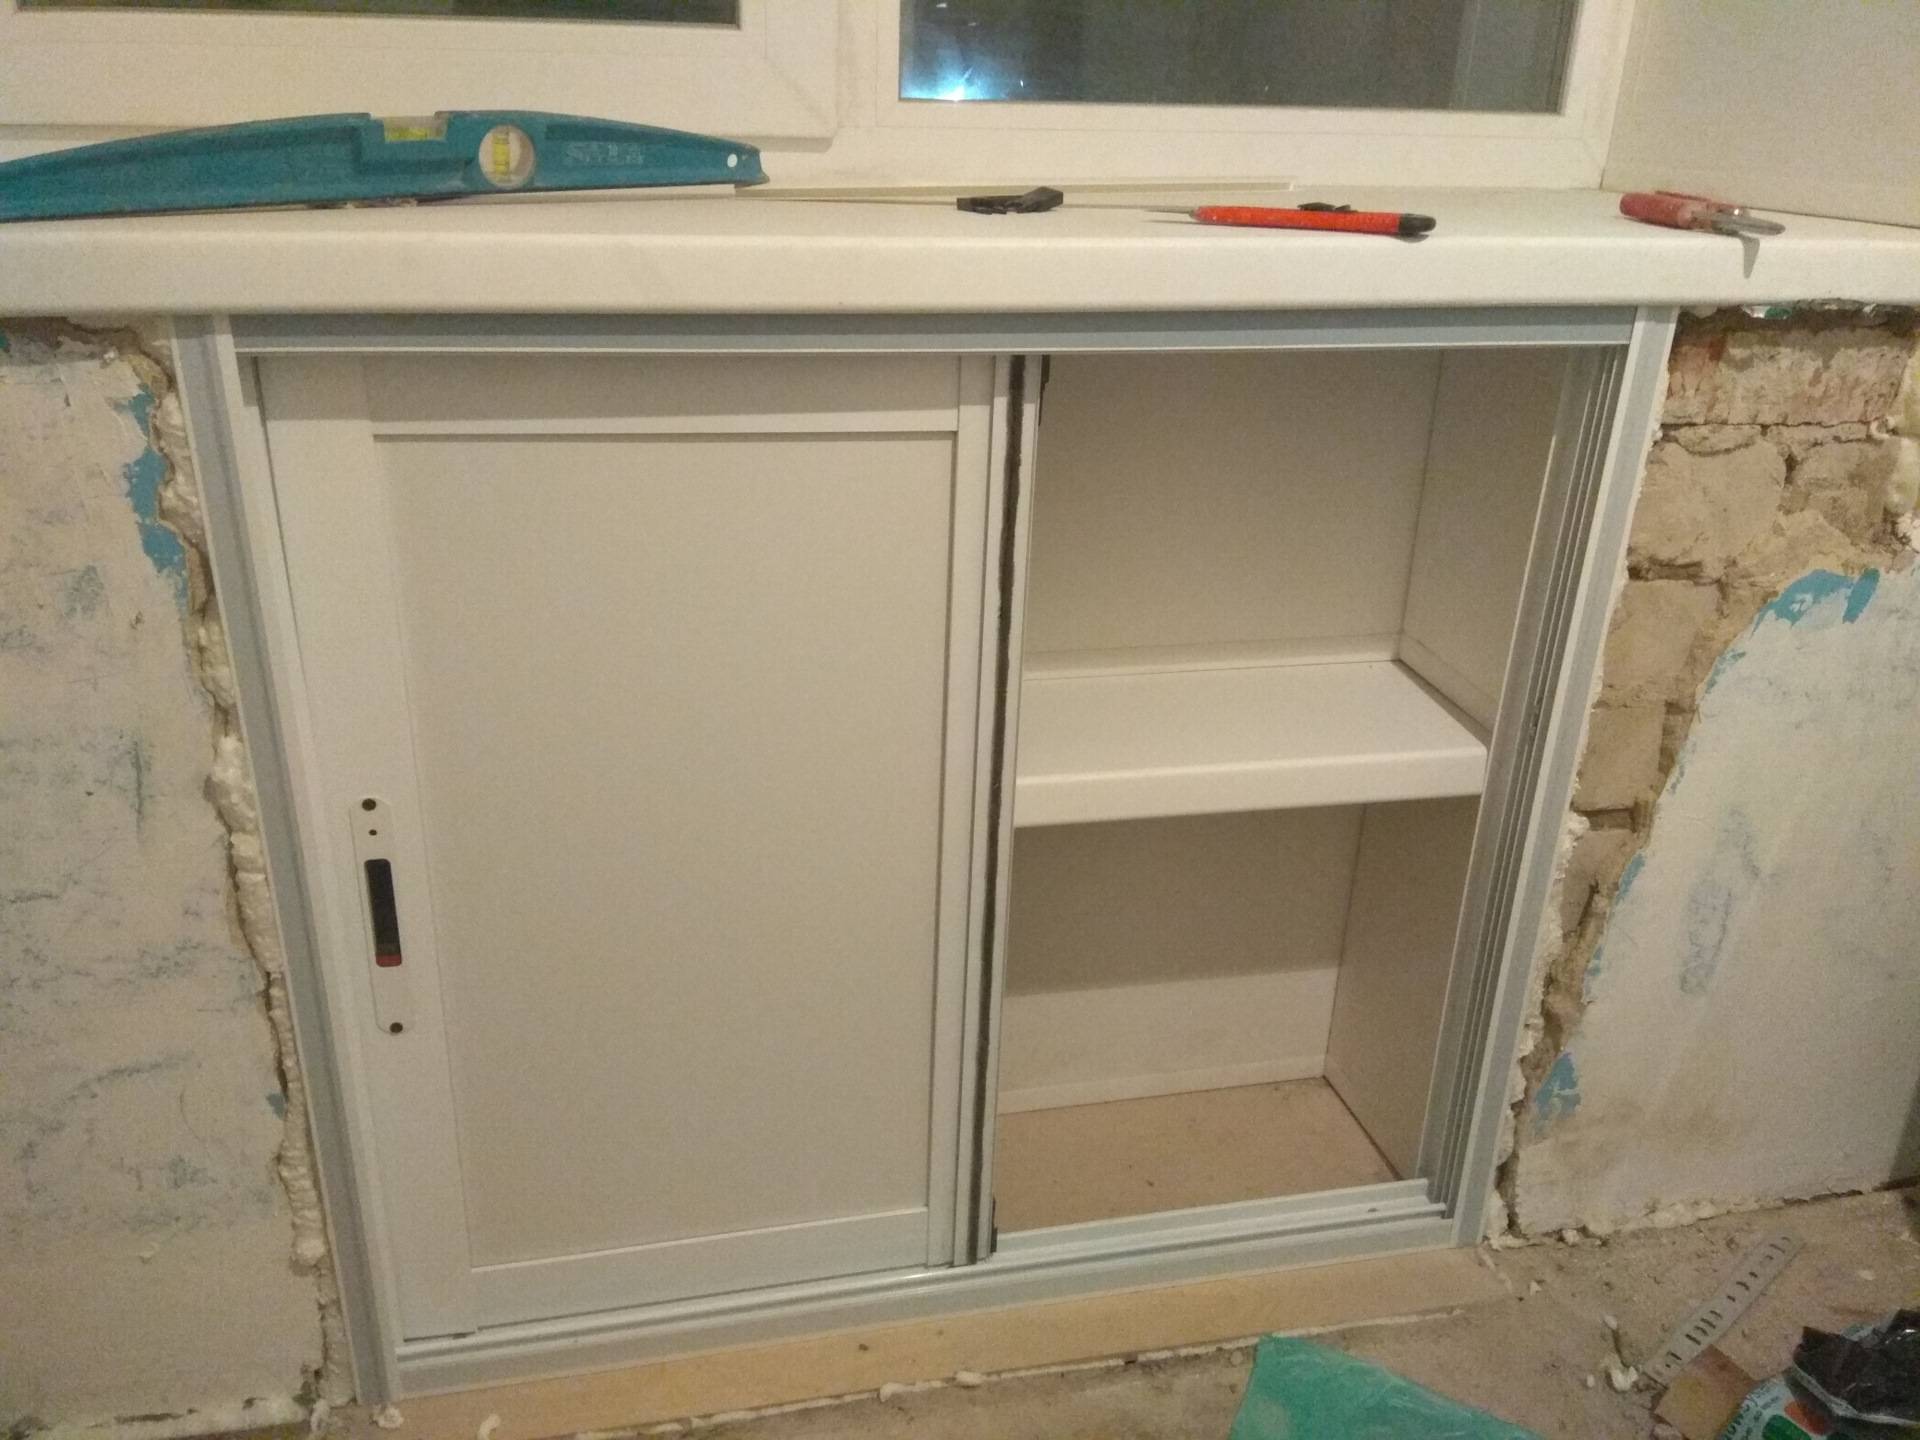 Холодильный шкаф под подоконником в кухне - строительные рецепты мира